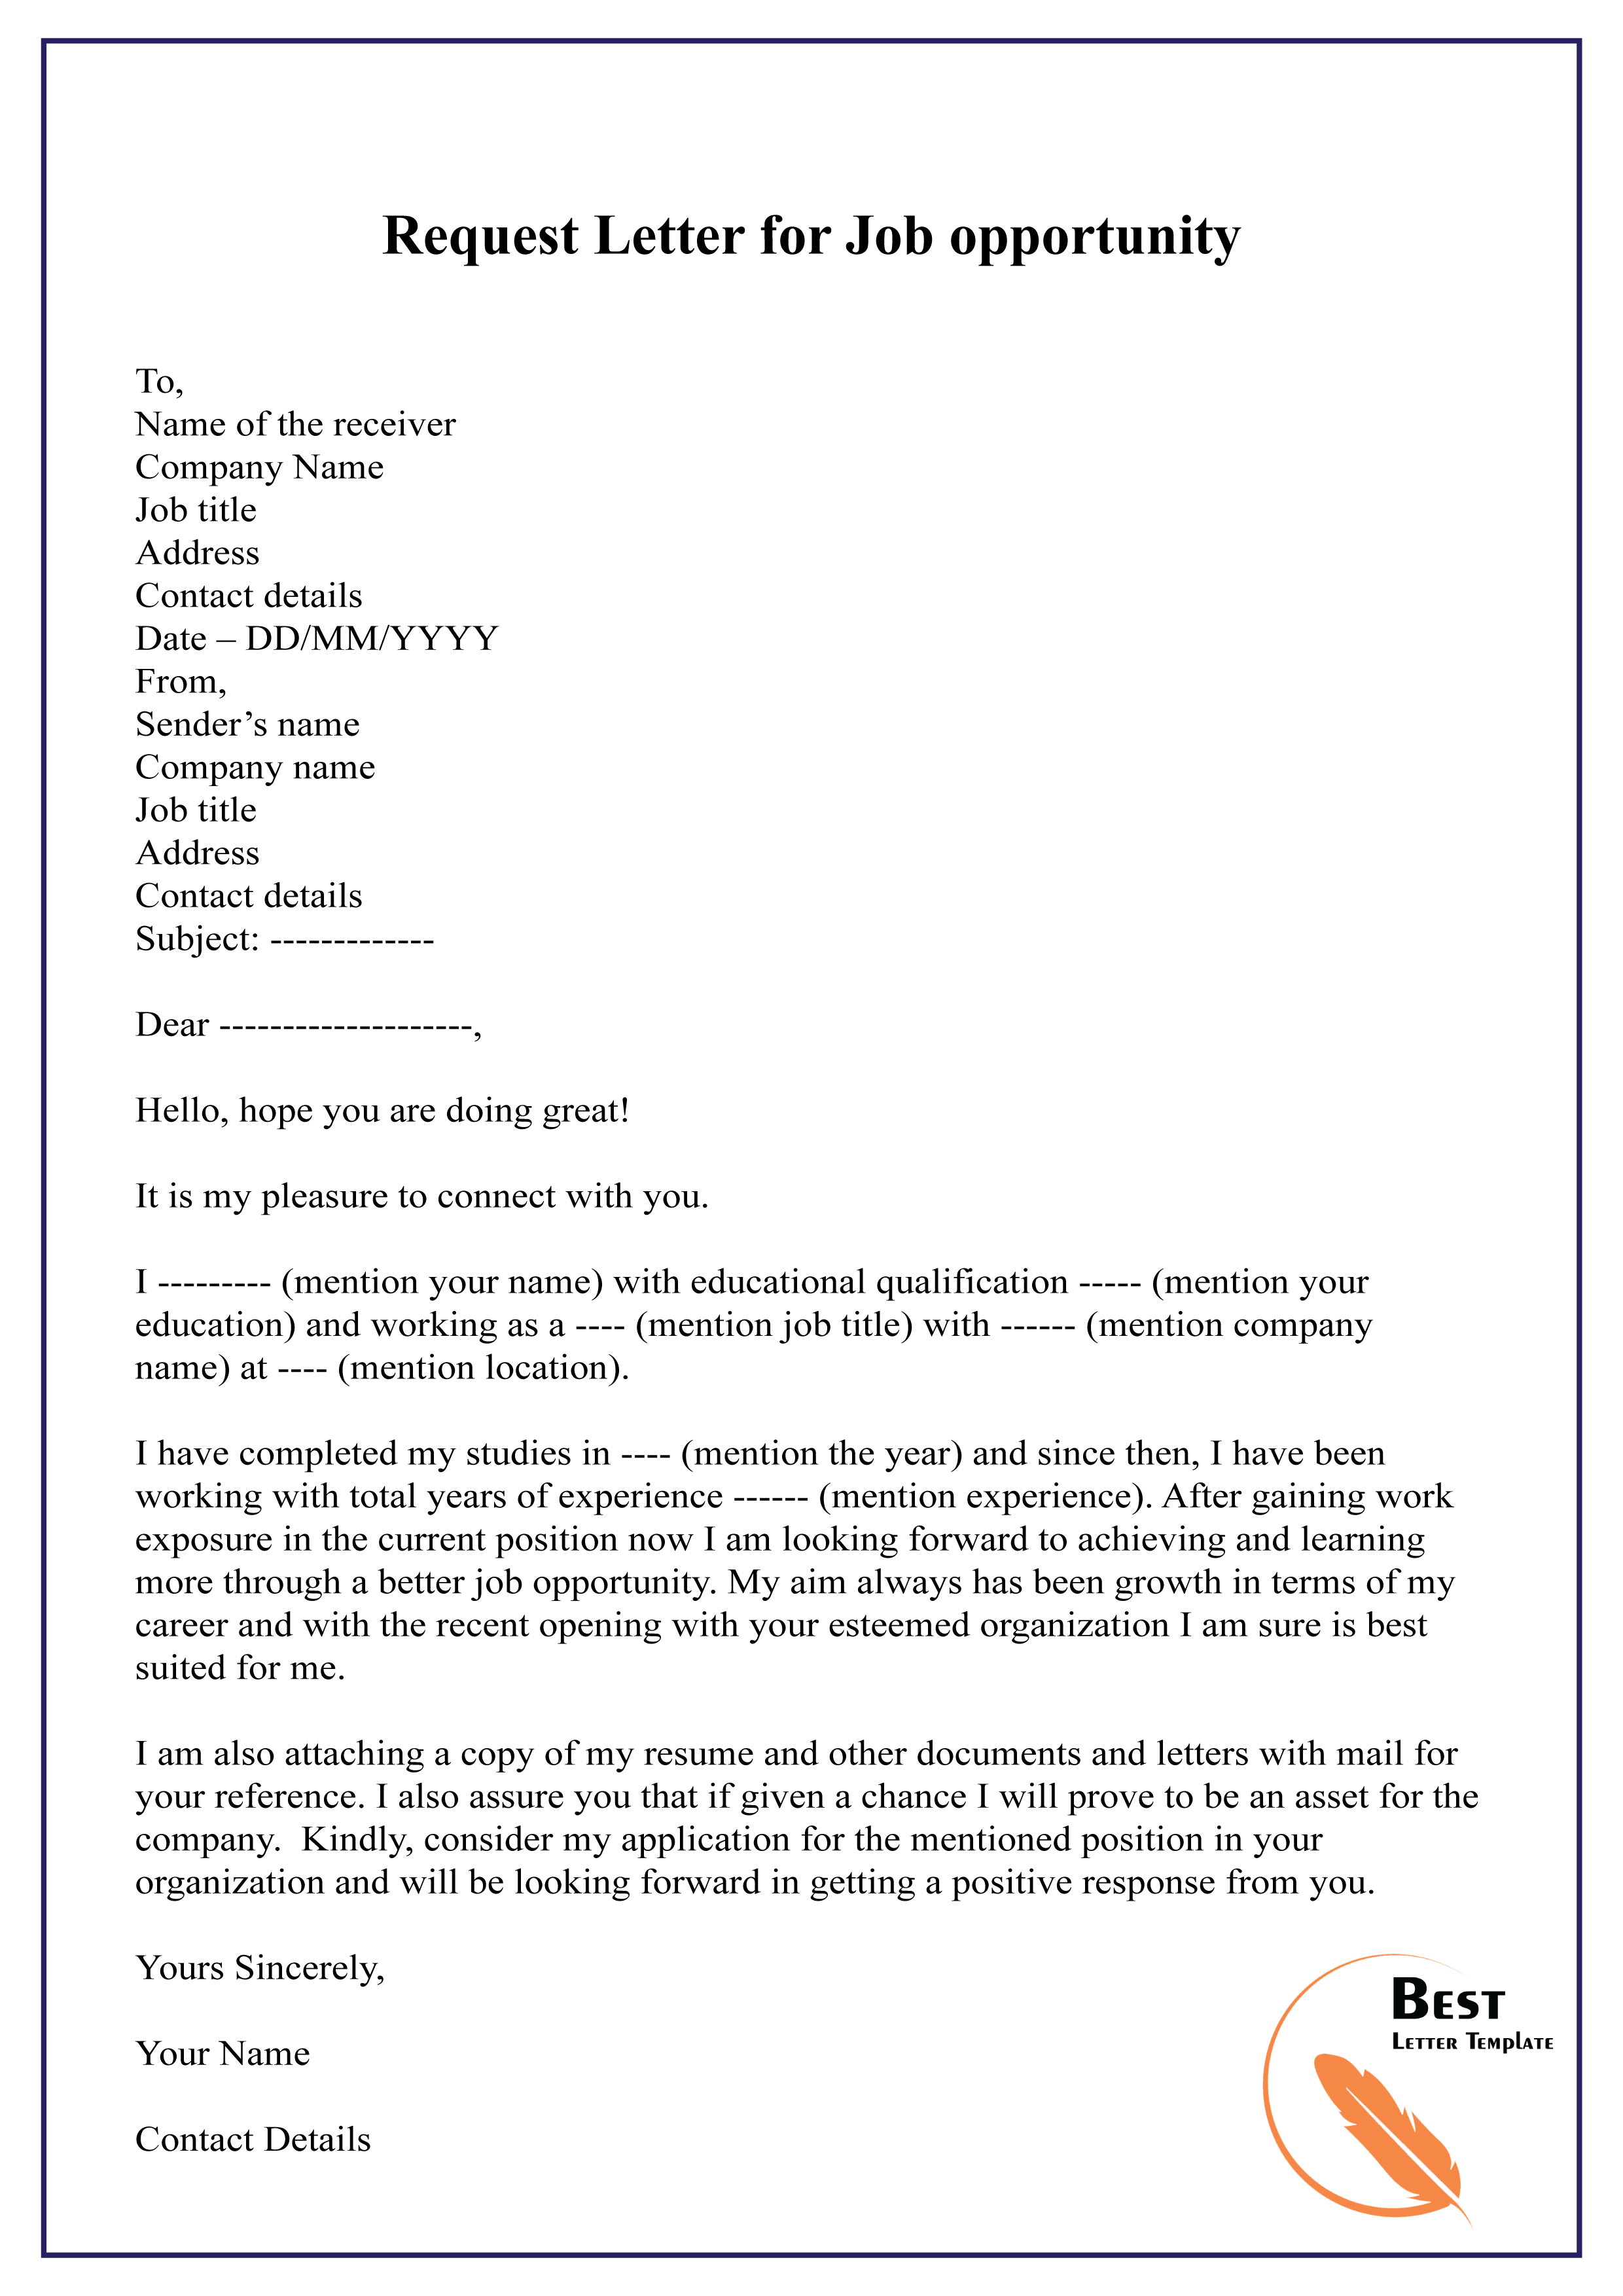 Job opportunities letter sample